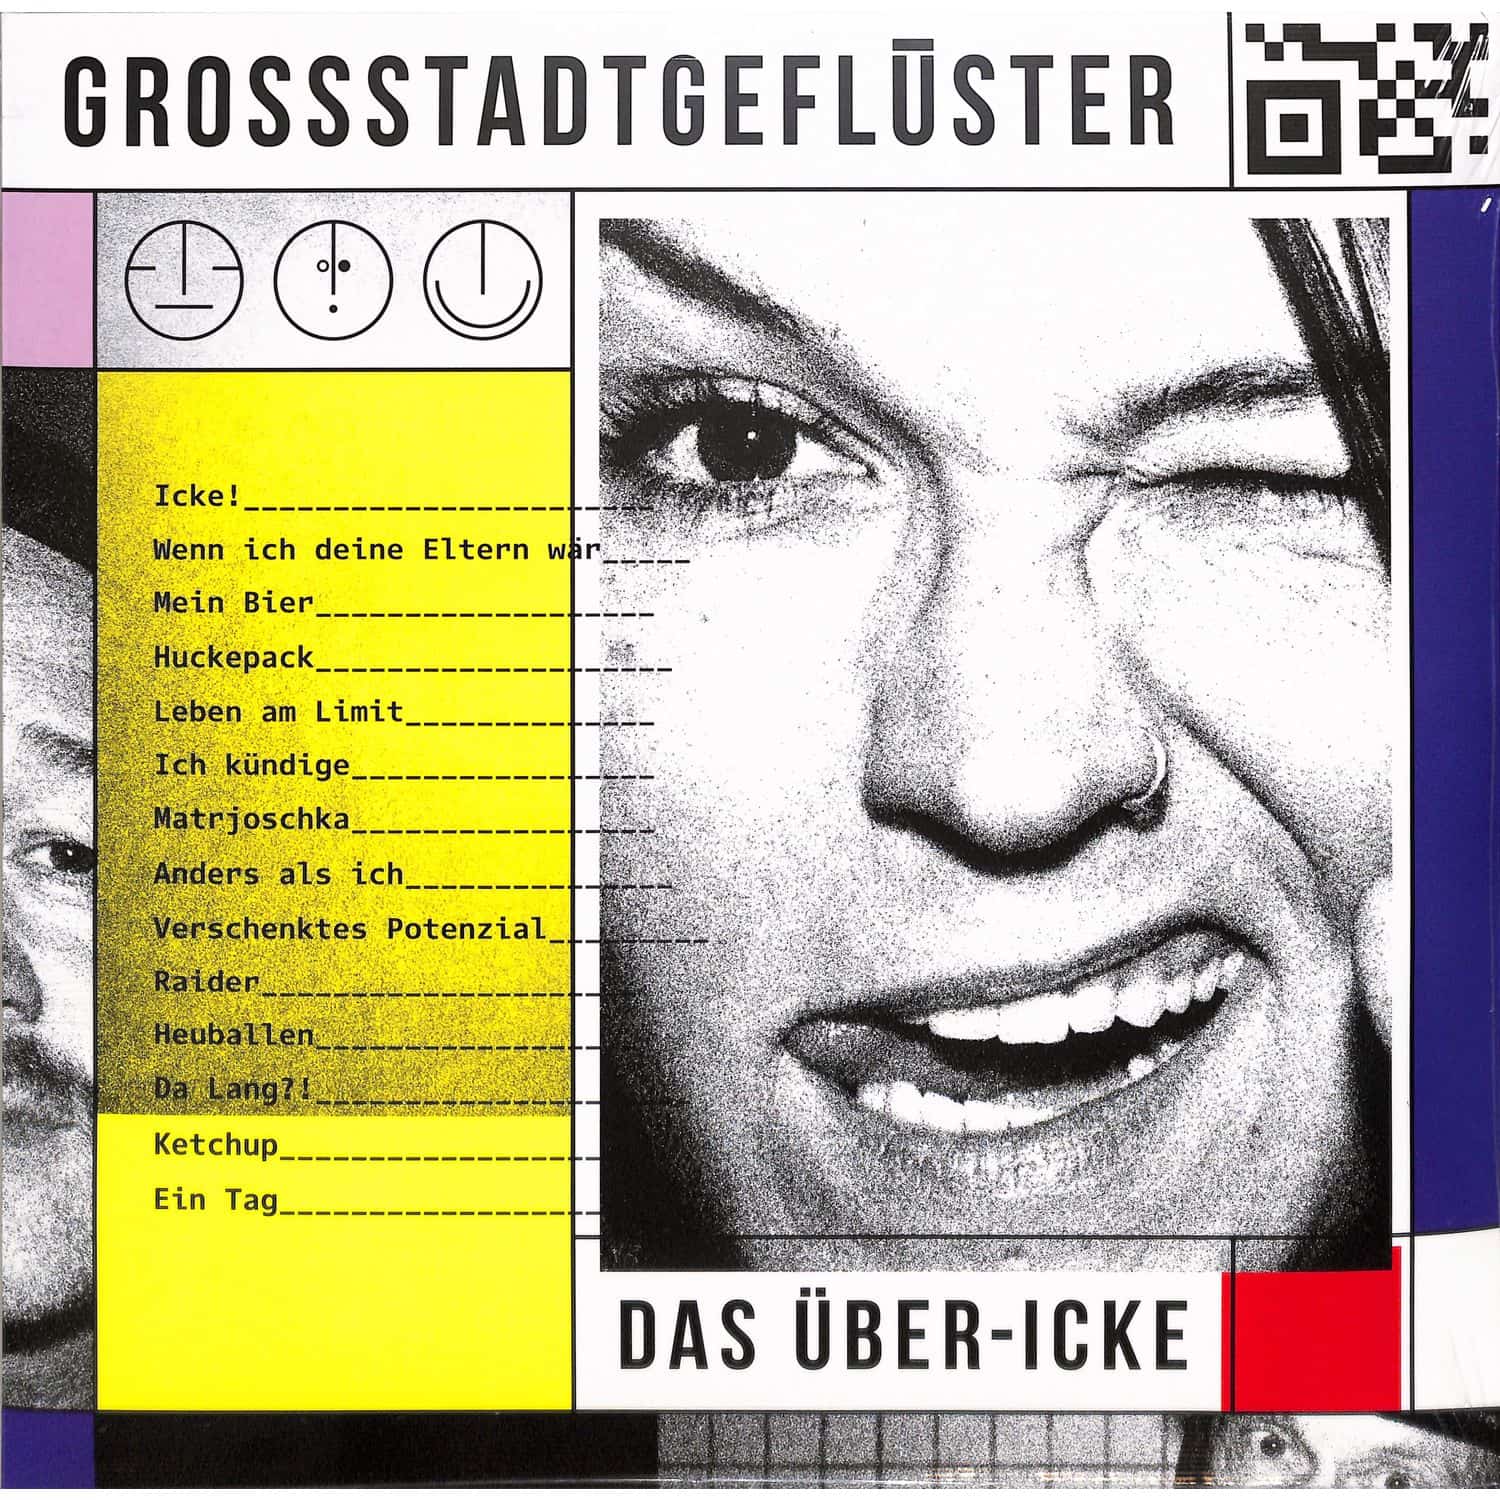 Grossstadtgeflster - DAS BER-ICKE 